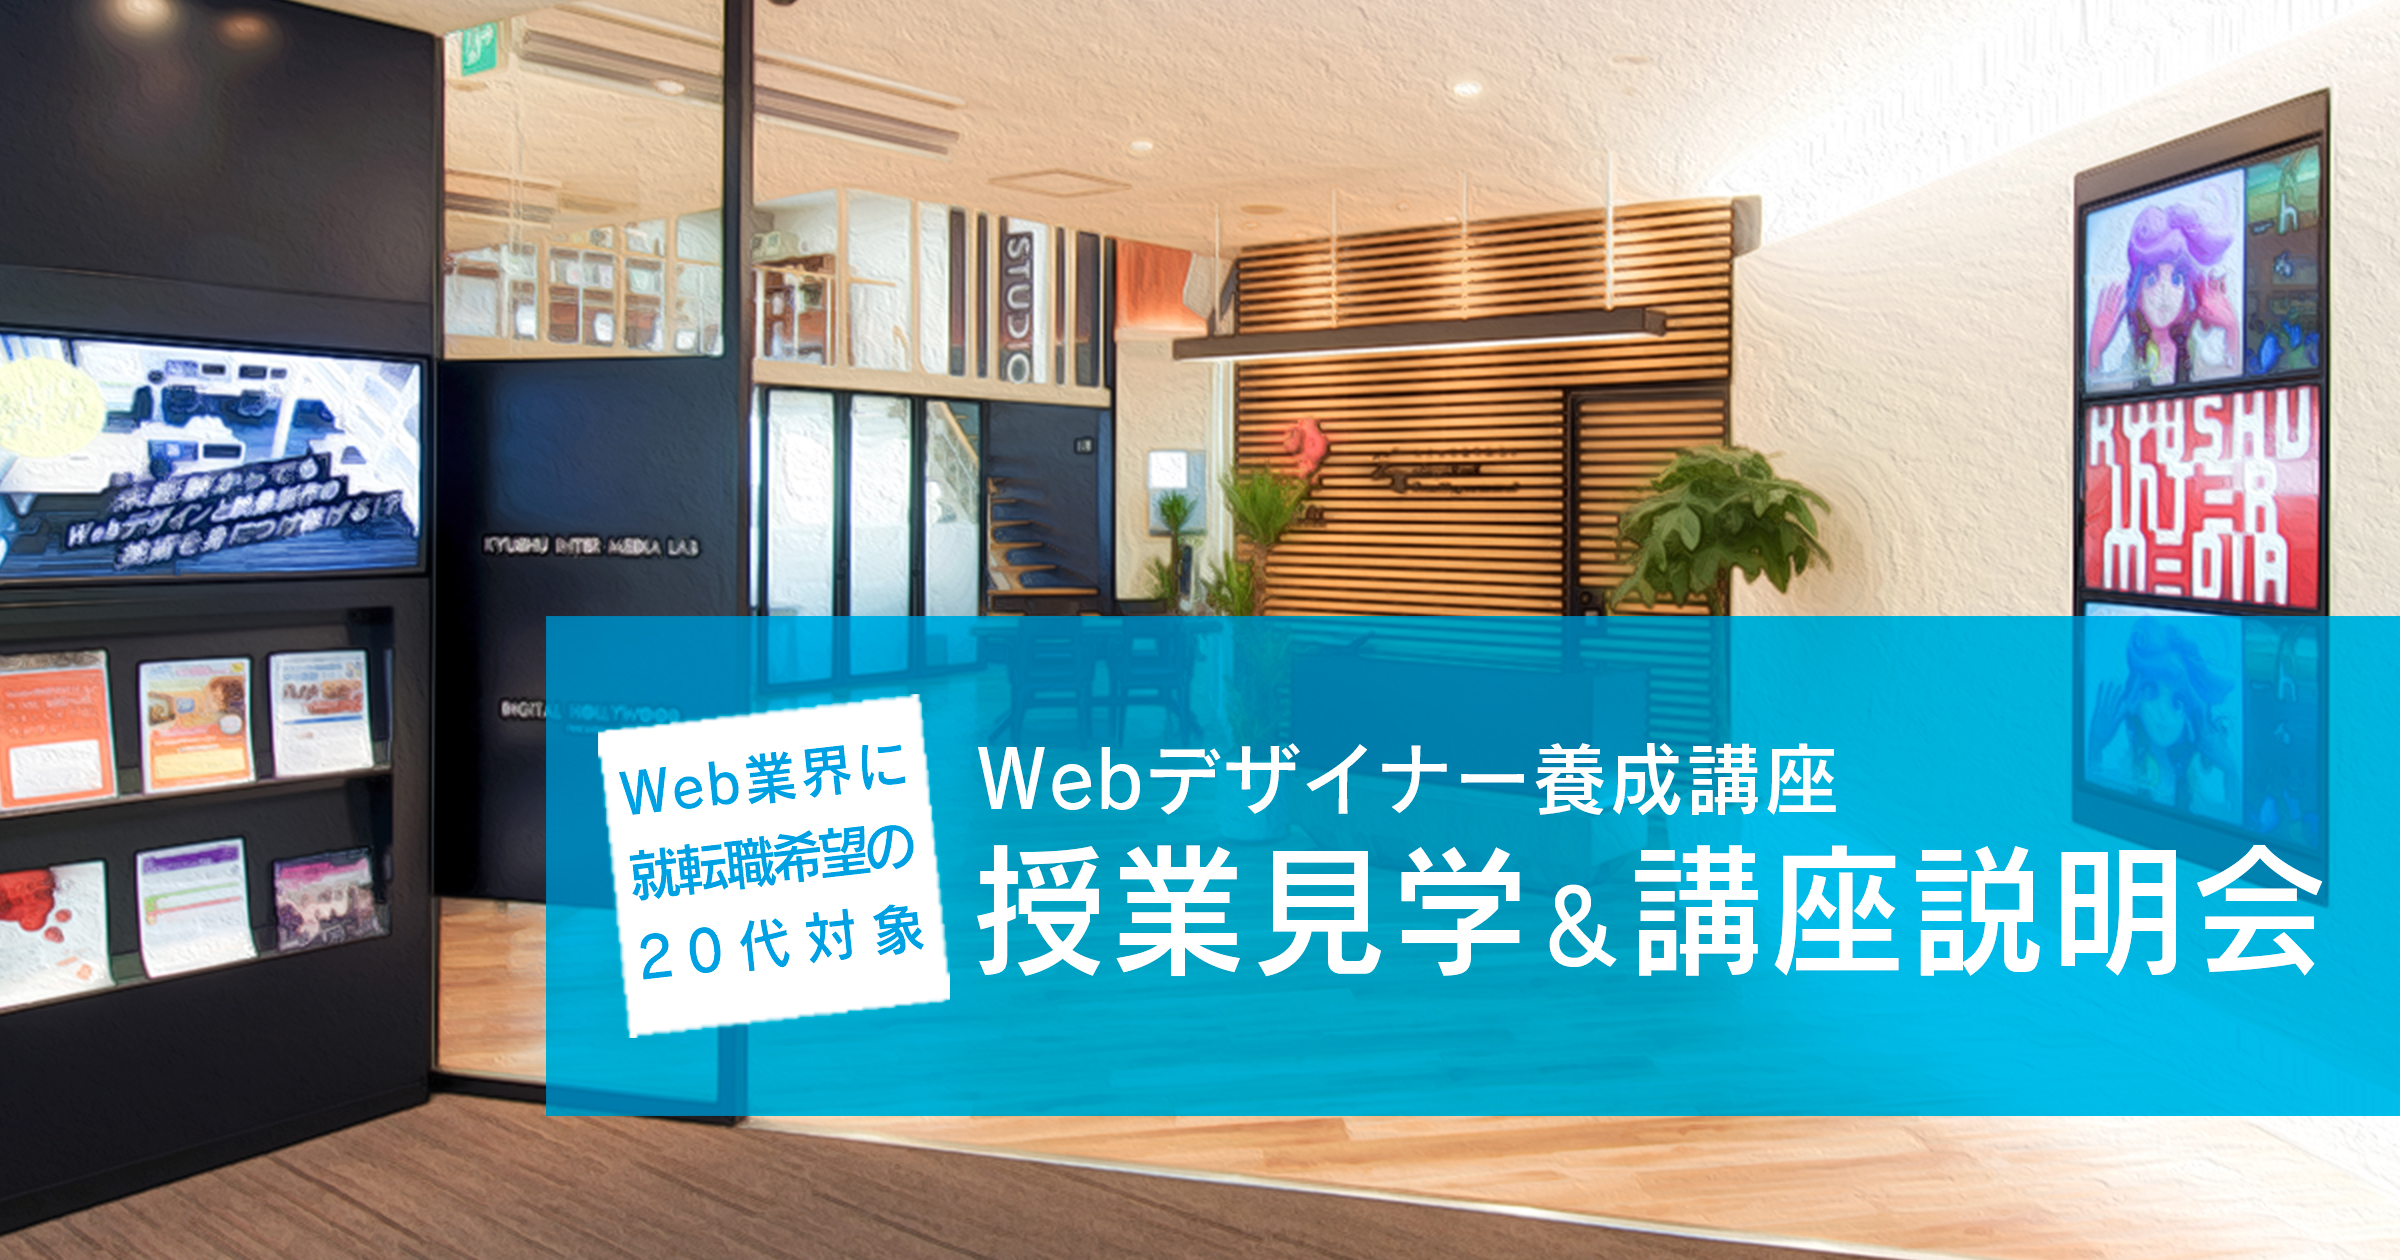 【Web業界に就転職希望の20代対象】「Webデザイナー養成講座」授業見学&amp;講座説明会〈2020年2月22日（土）10時30分開催〉